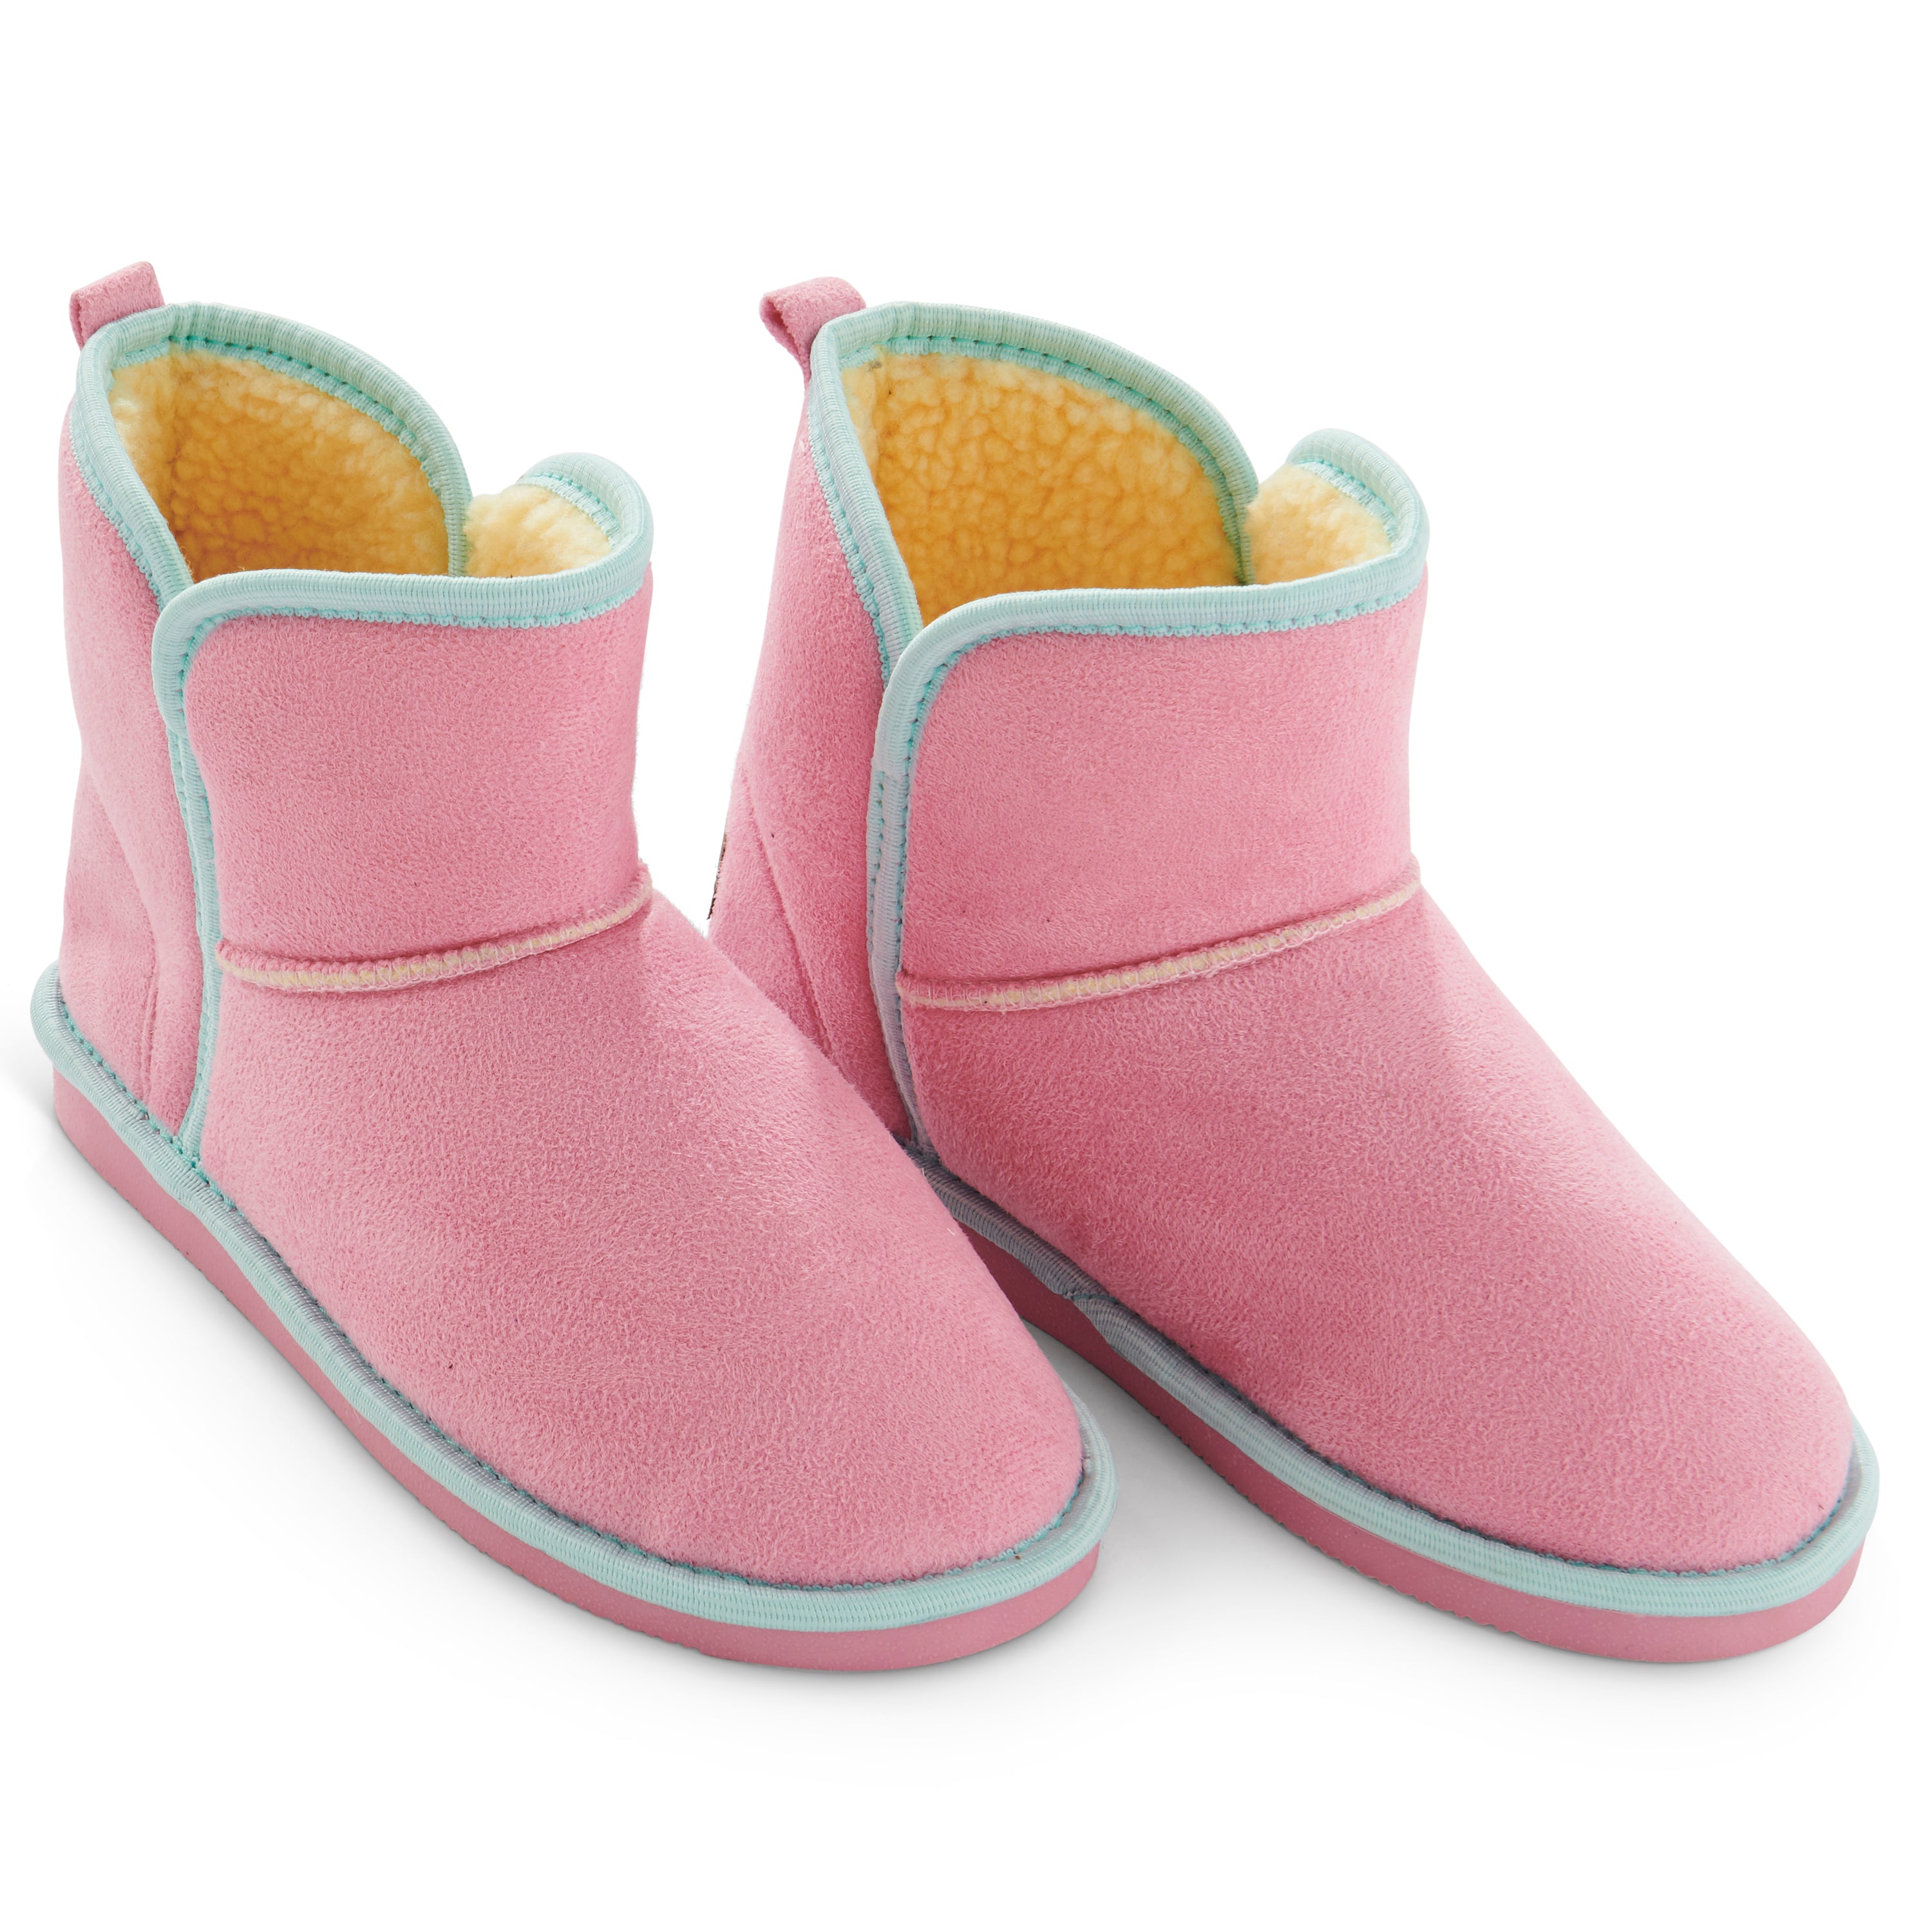 Kip & Co - Sherpa Boots - Pinkie Sunshine